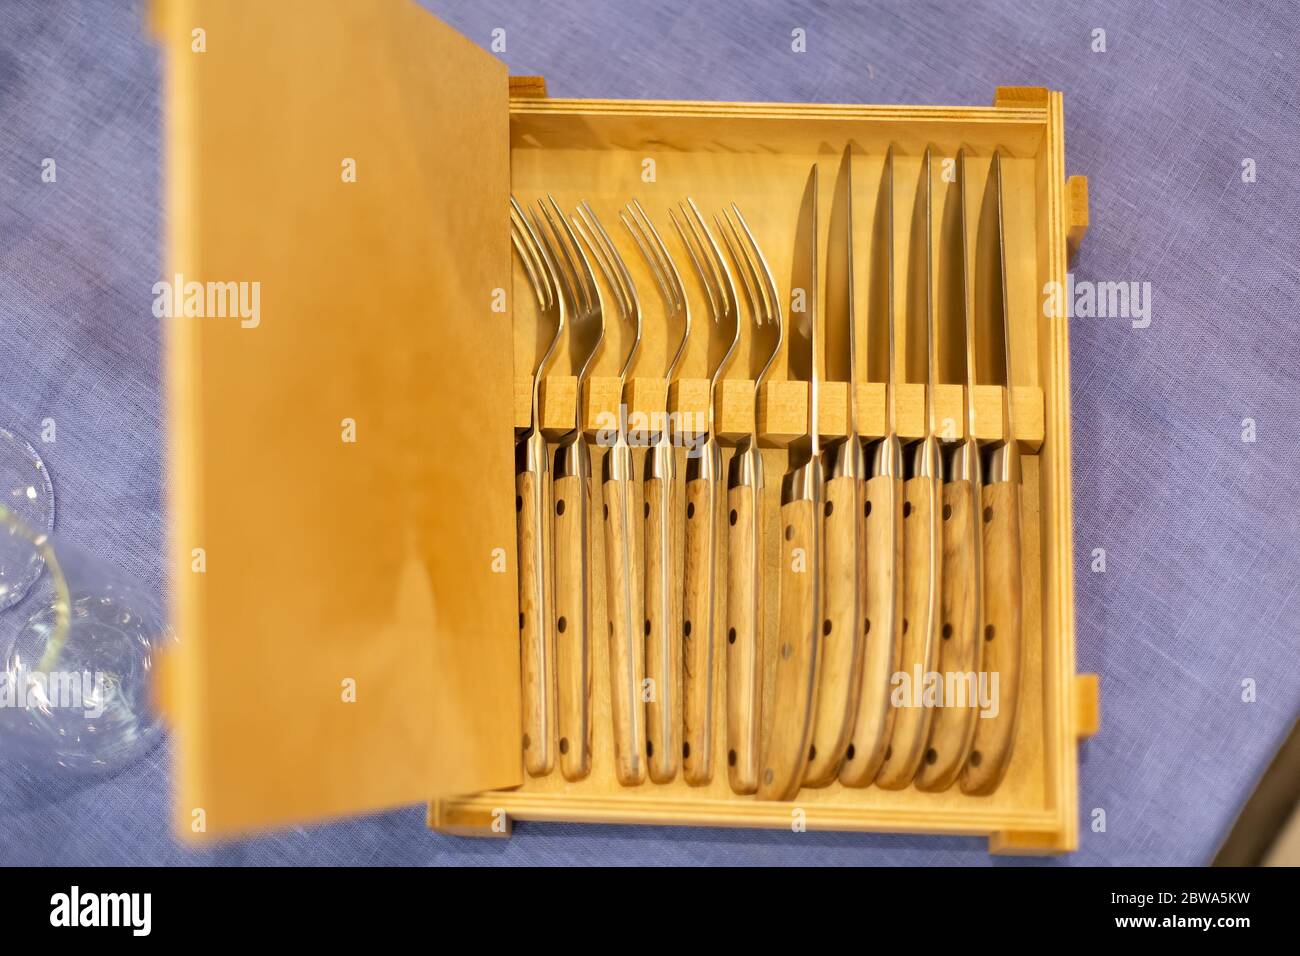 Offene Holzkiste mit Besteck 6 Messer und sechs Gabeln auf einer blauen Tischdecke. Draufsicht, Nahaufnahme, weiche Fokussierung. Stockfoto